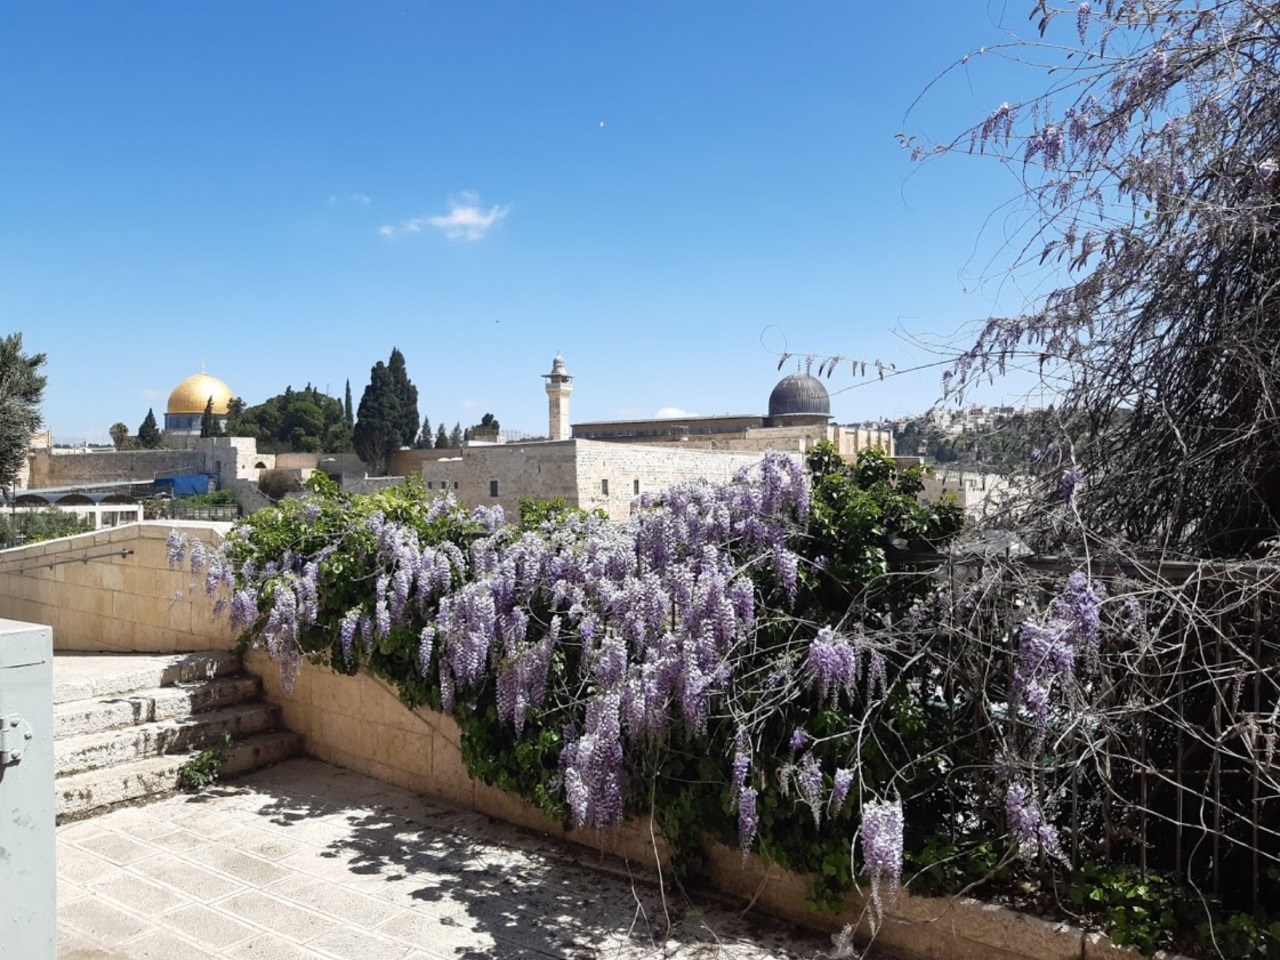 Иерусалим небесный и земной | Цена 400€, отзывы, описание экскурсии